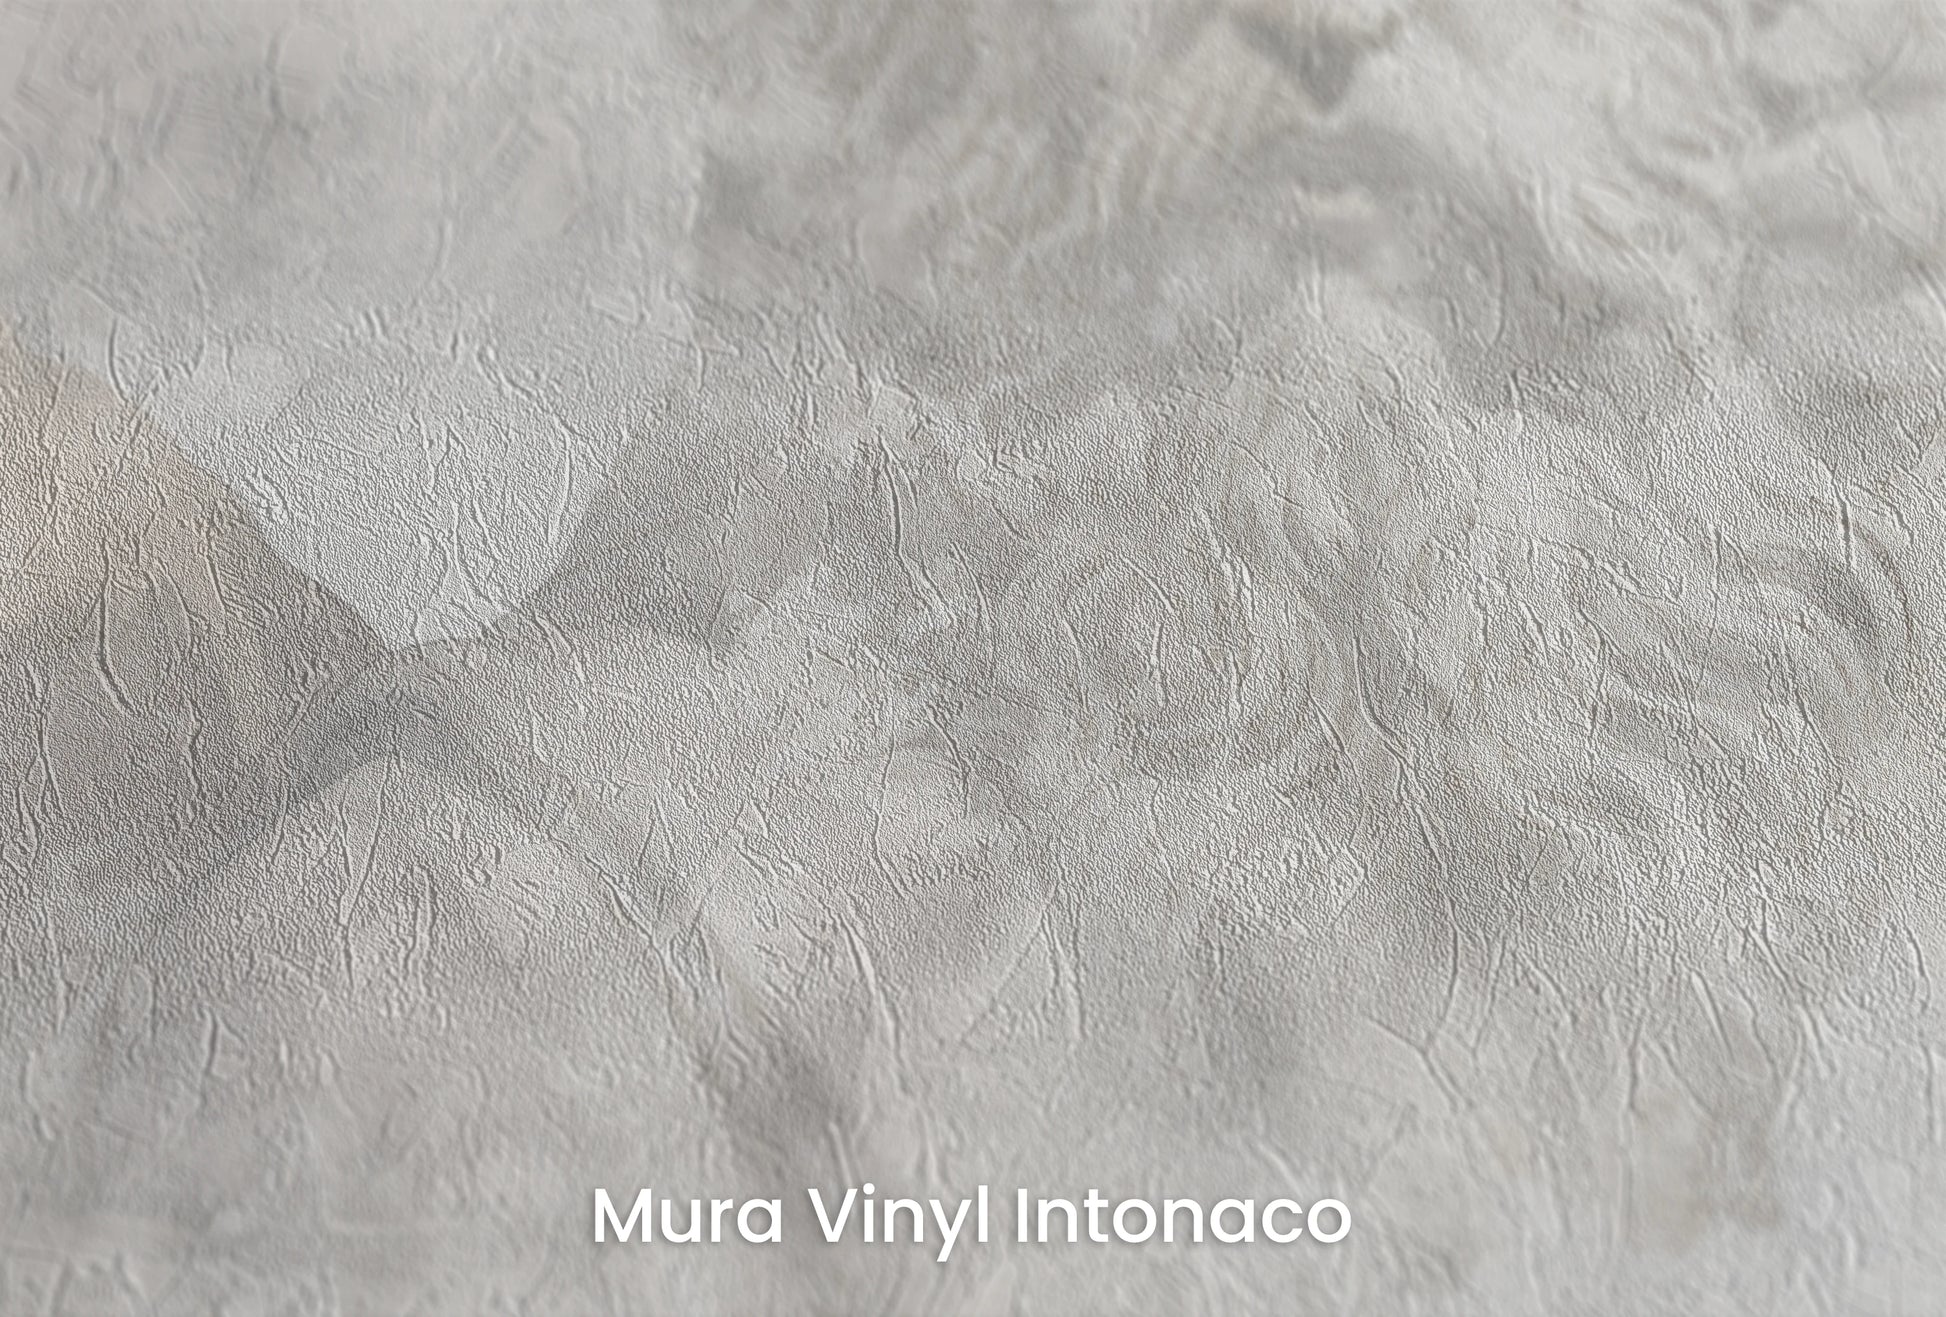 Zbliżenie na artystyczną fototapetę o nazwie Zeus's Introspection na podłożu Mura Vinyl Intonaco - struktura tartego tynku.